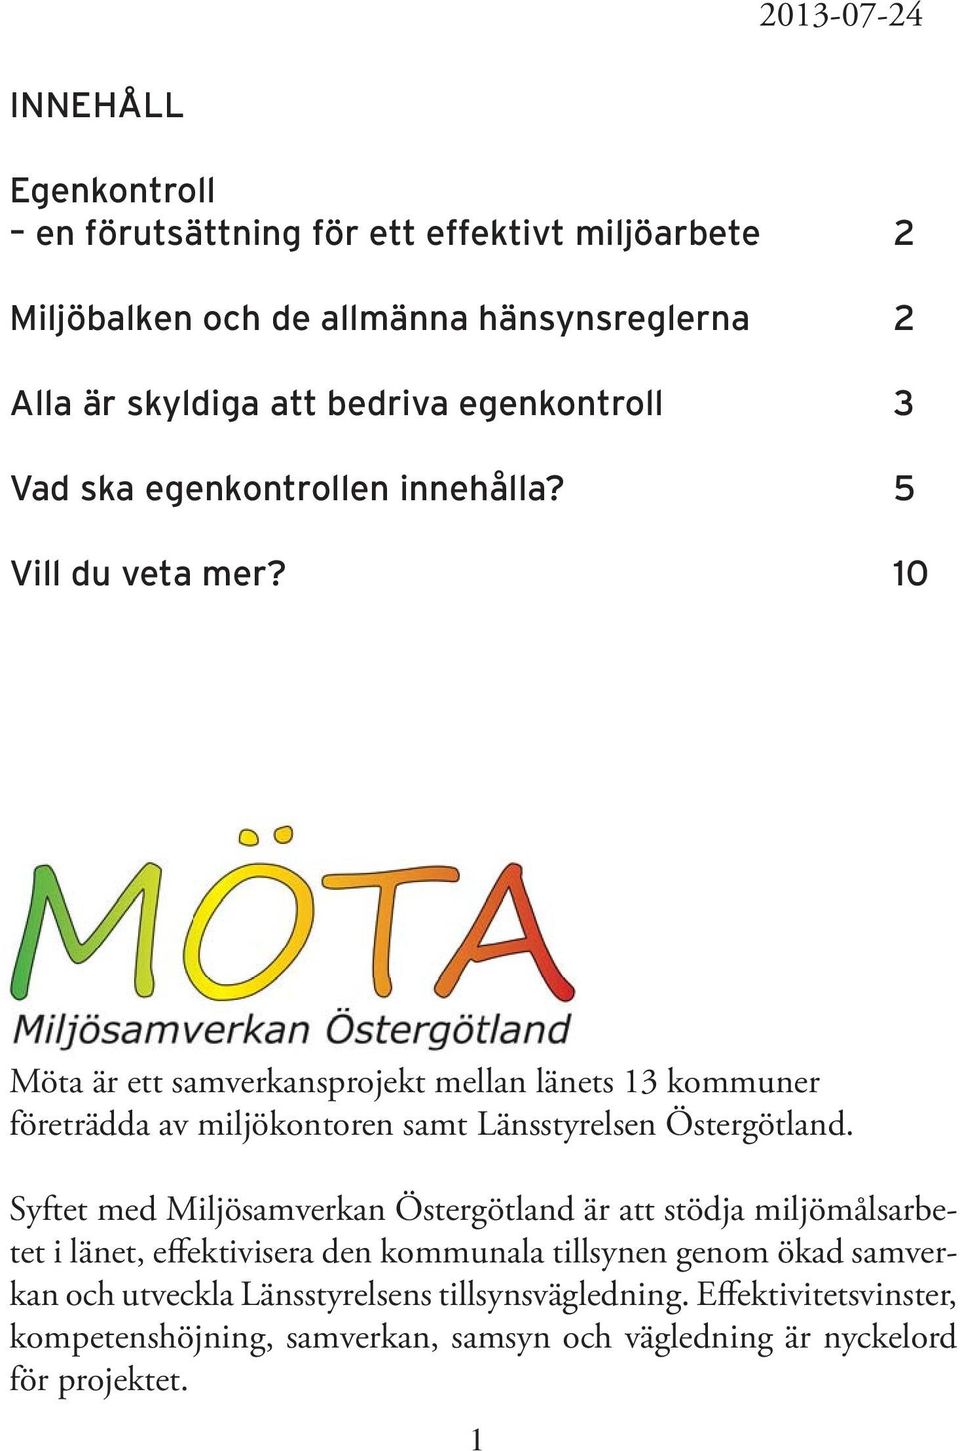 10 Möta är ett samverkansprojekt mellan länets 13 kommuner företrädda av miljökontoren samt Länsstyrelsen Östergötland.